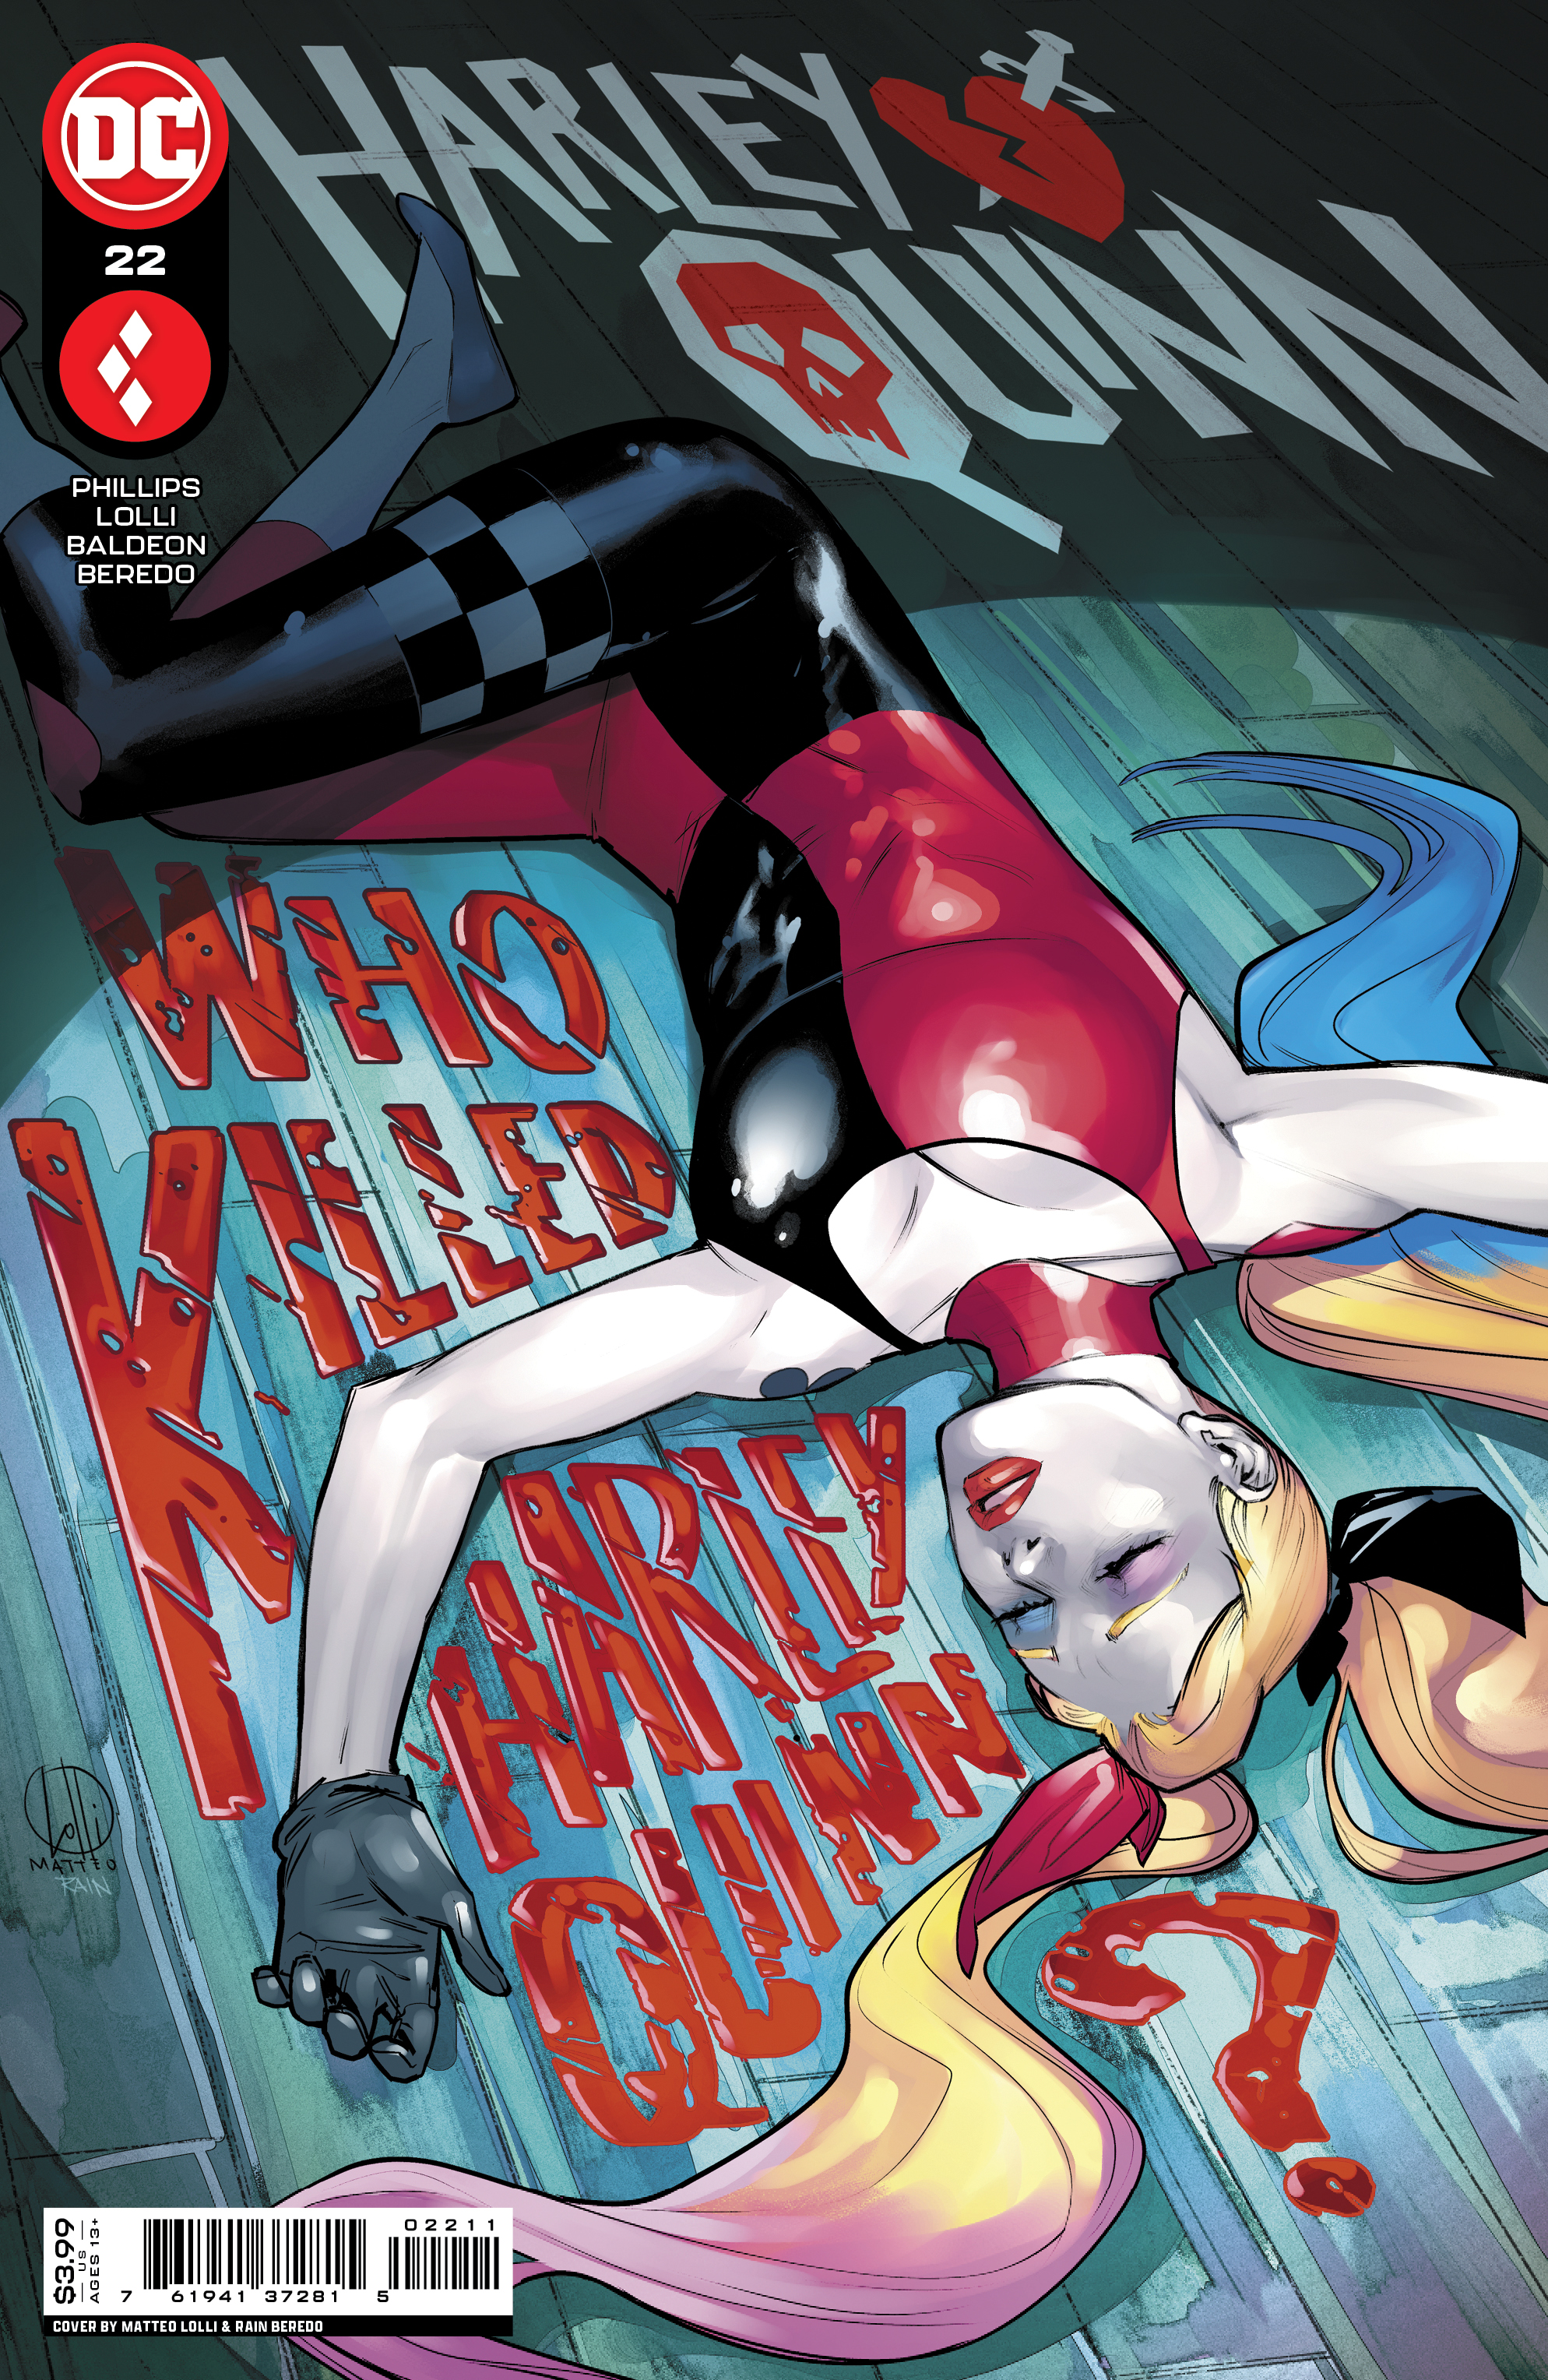 Harley Quinn #22 Cover A Matteo Lolli (2021)